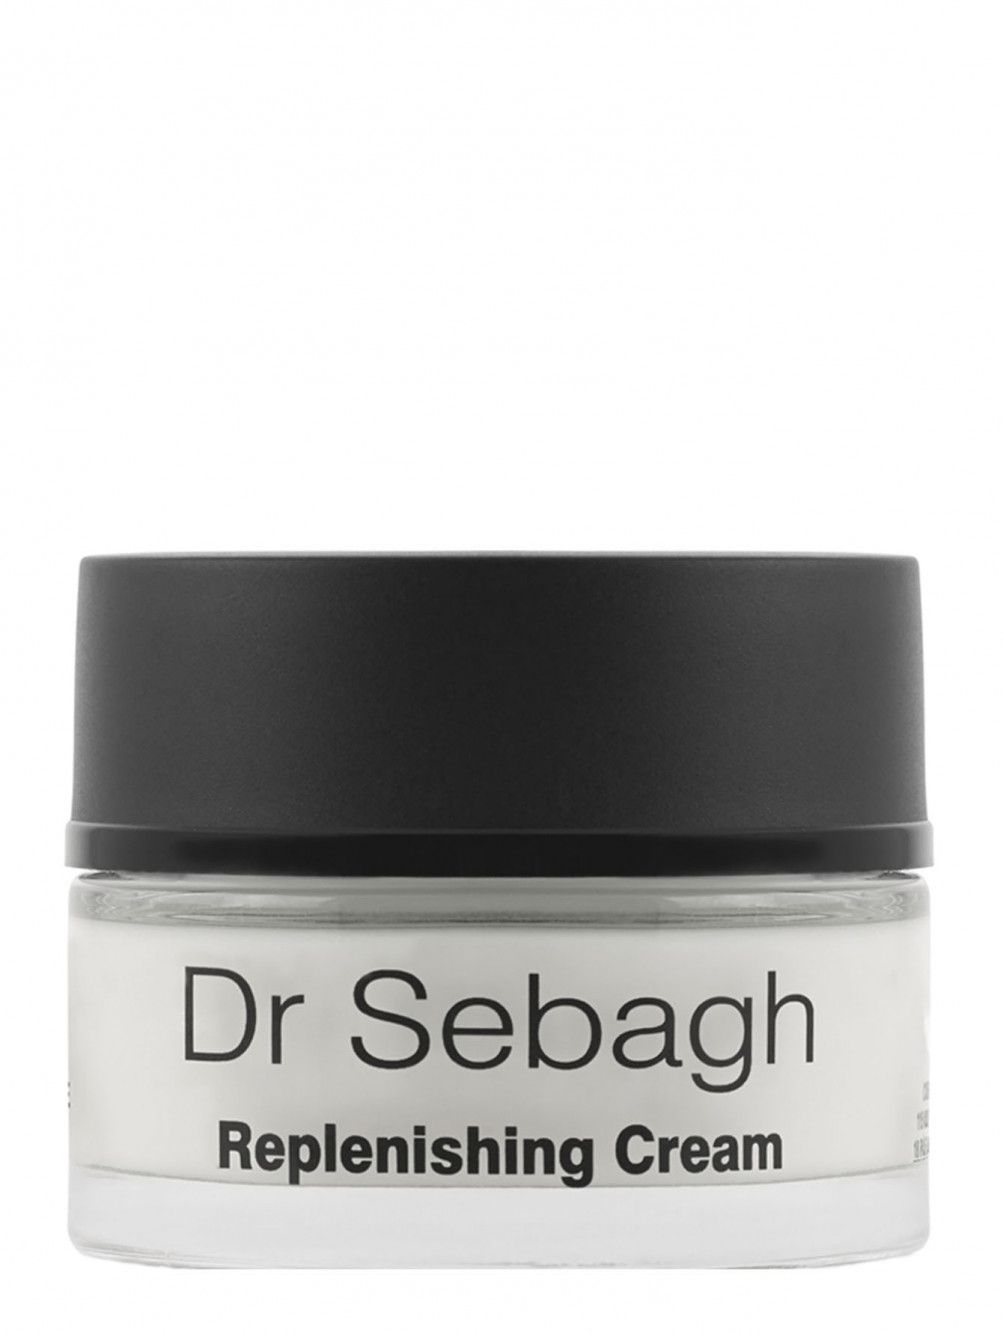 Крем с гормоноподобным эффектом для зрелой кожи - Replenishing cream, 50ml - Общий вид